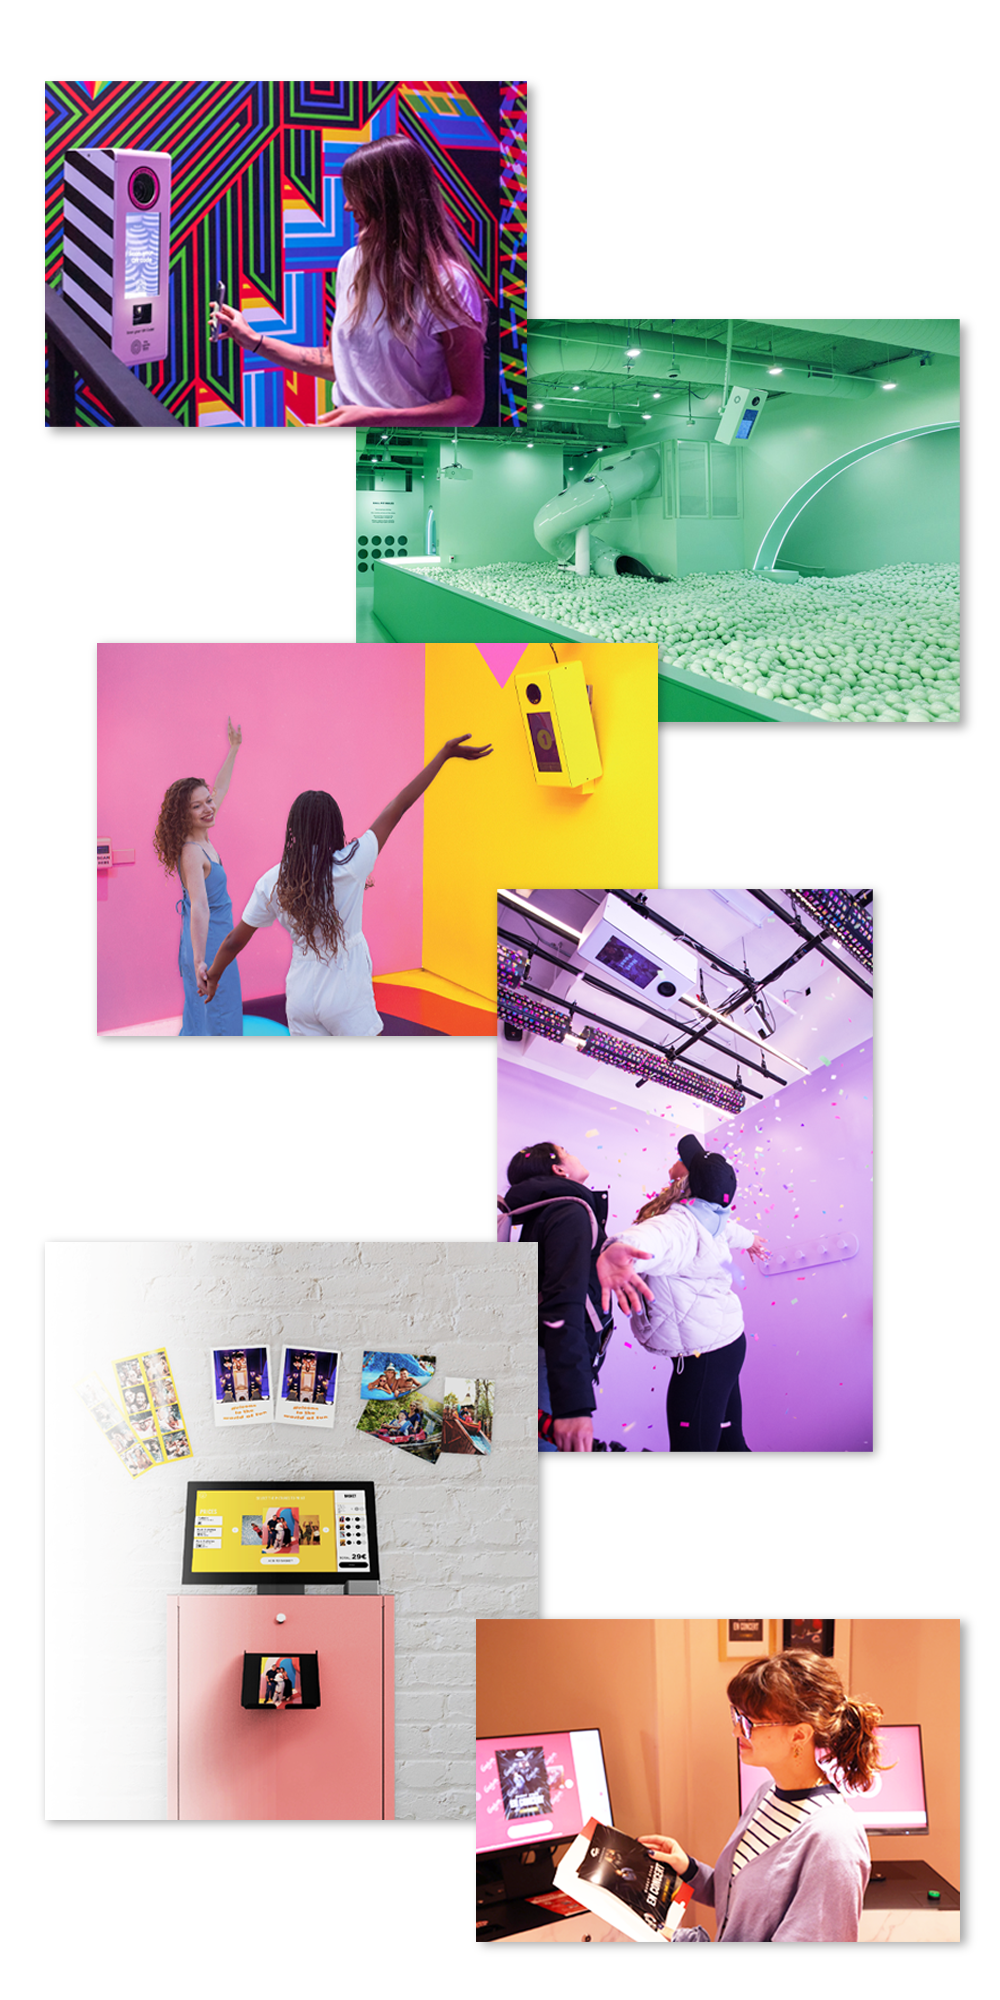 Collage van Scan & Capture-ervaringen met een groen scherm, fotoafdrukken en vrolijke deelnemers.